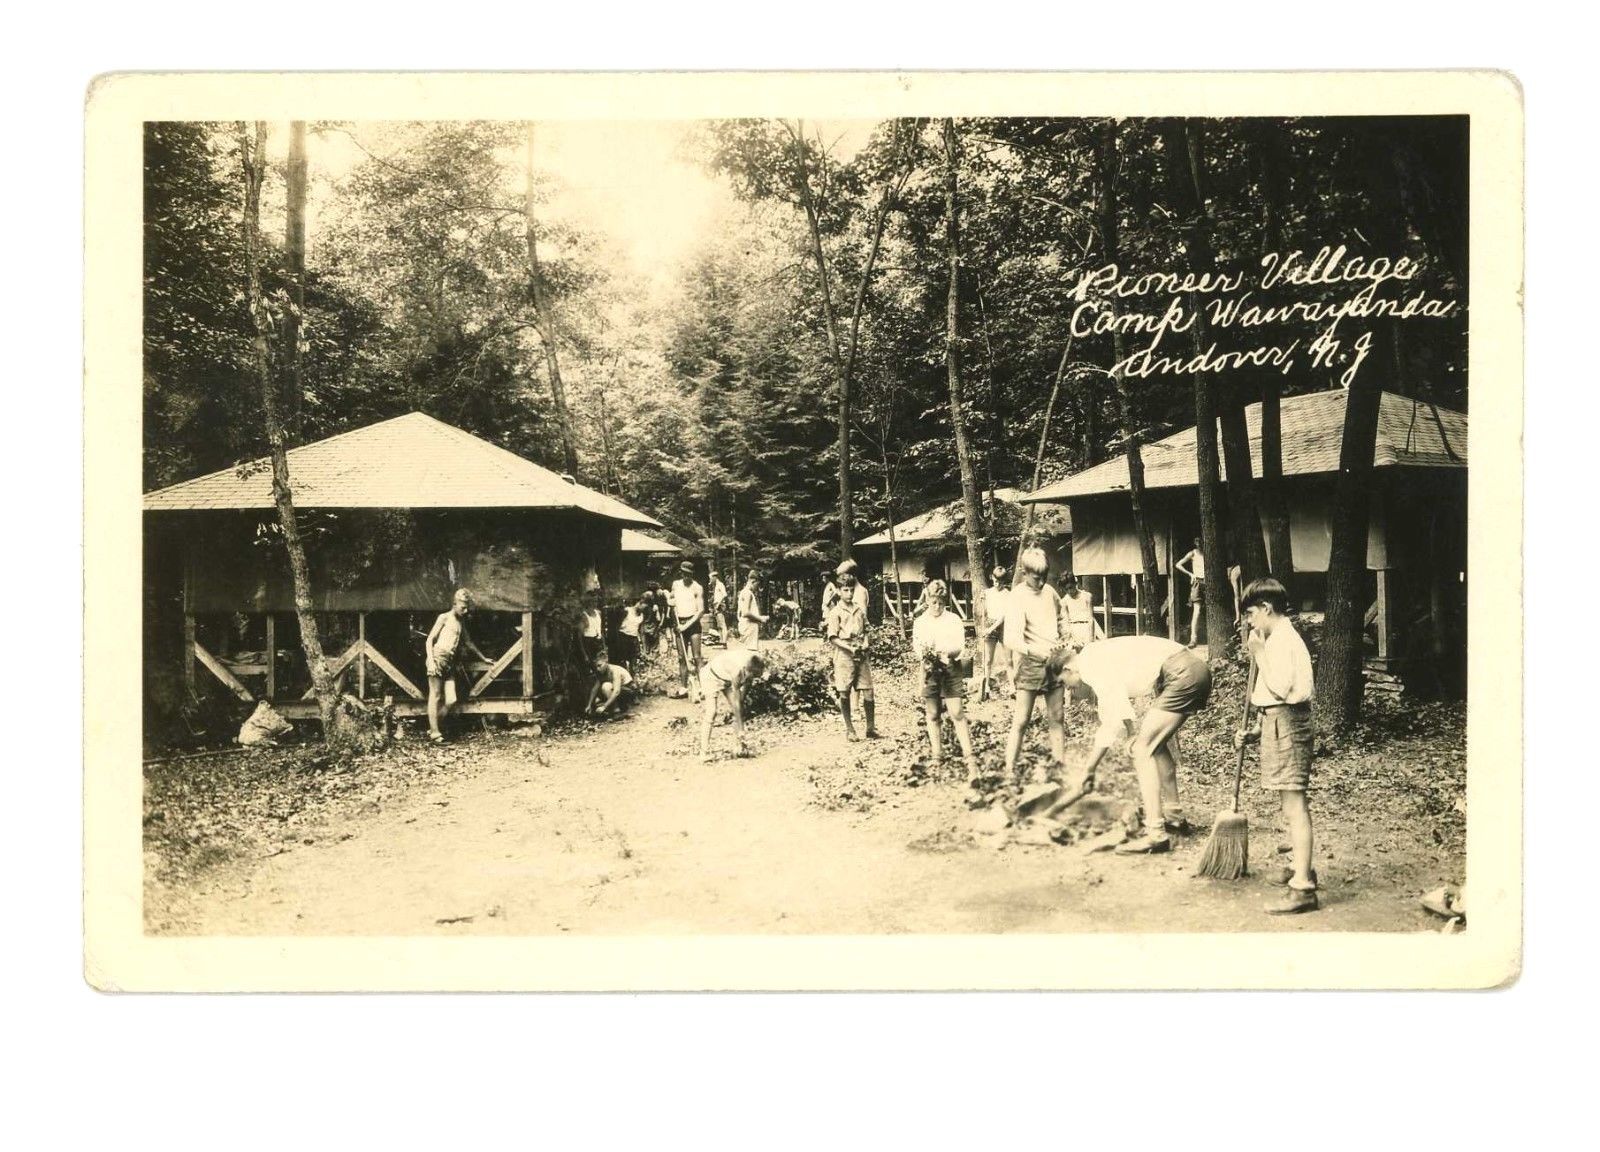 Andover - Camp wayawanda - Pioneer village